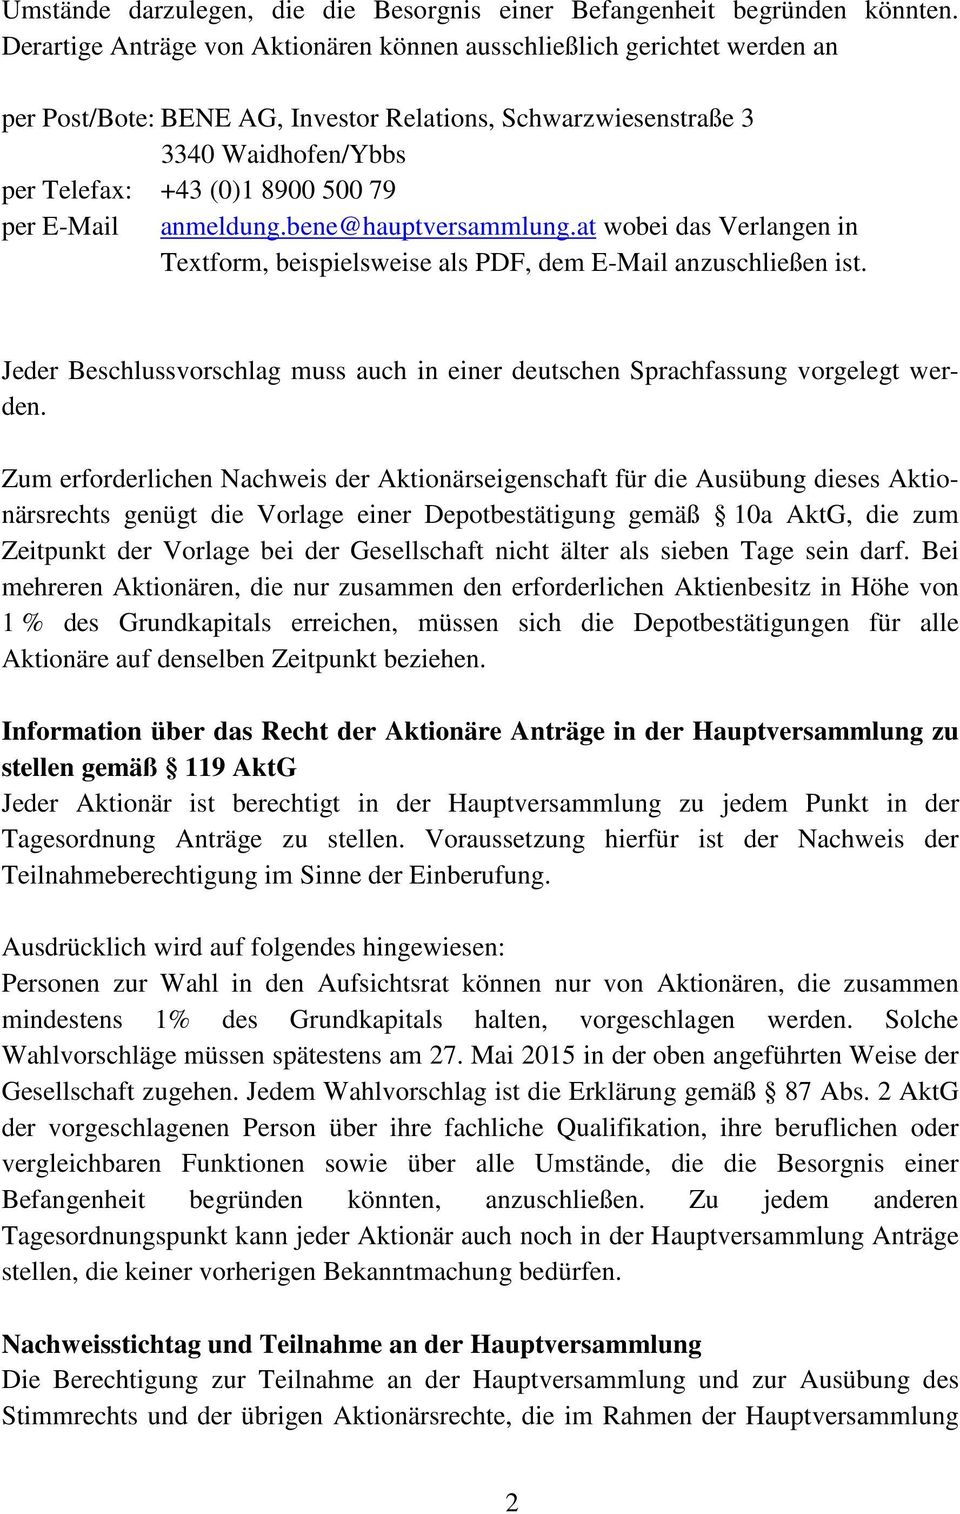 bene@hauptversammlung.at wobei das Verlangen in Textform, beispielsweise als PDF, dem E-Mail anzuschließen ist. Jeder Beschlussvorschlag muss auch in einer deutschen Sprachfassung vorgelegt werden.